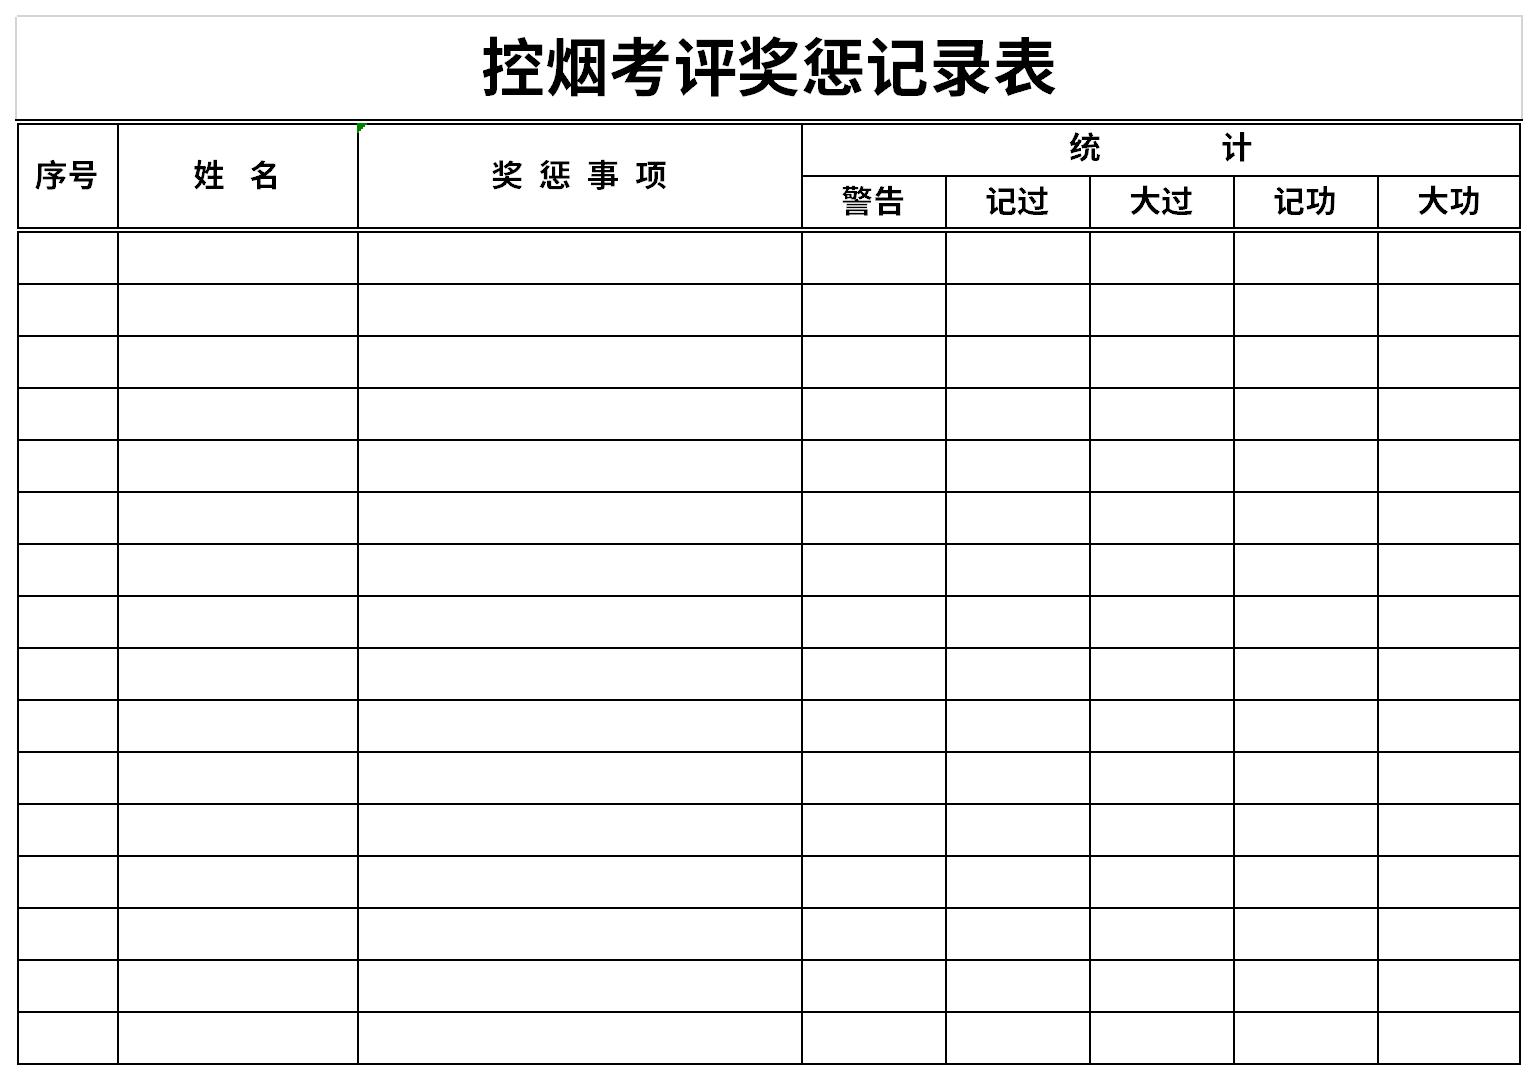 这是一套经过华军软件园精心筛选控烟考评奖惩记录表表格模板下载